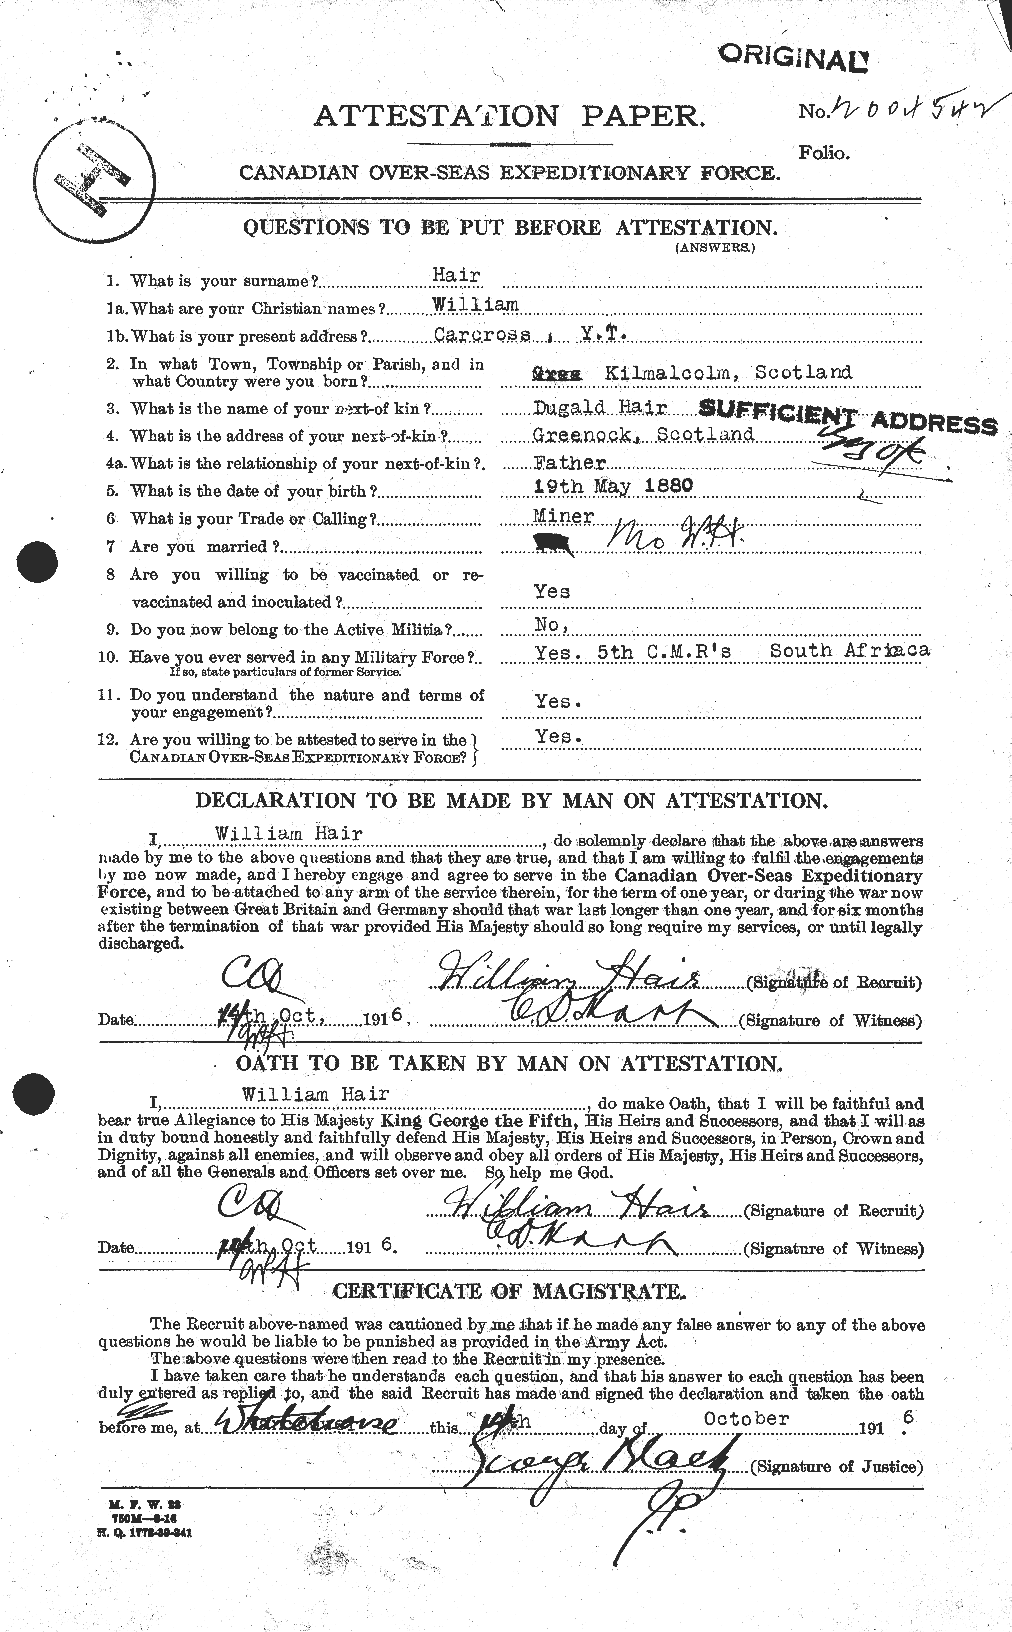 Dossiers du Personnel de la Première Guerre mondiale - CEC 369585a